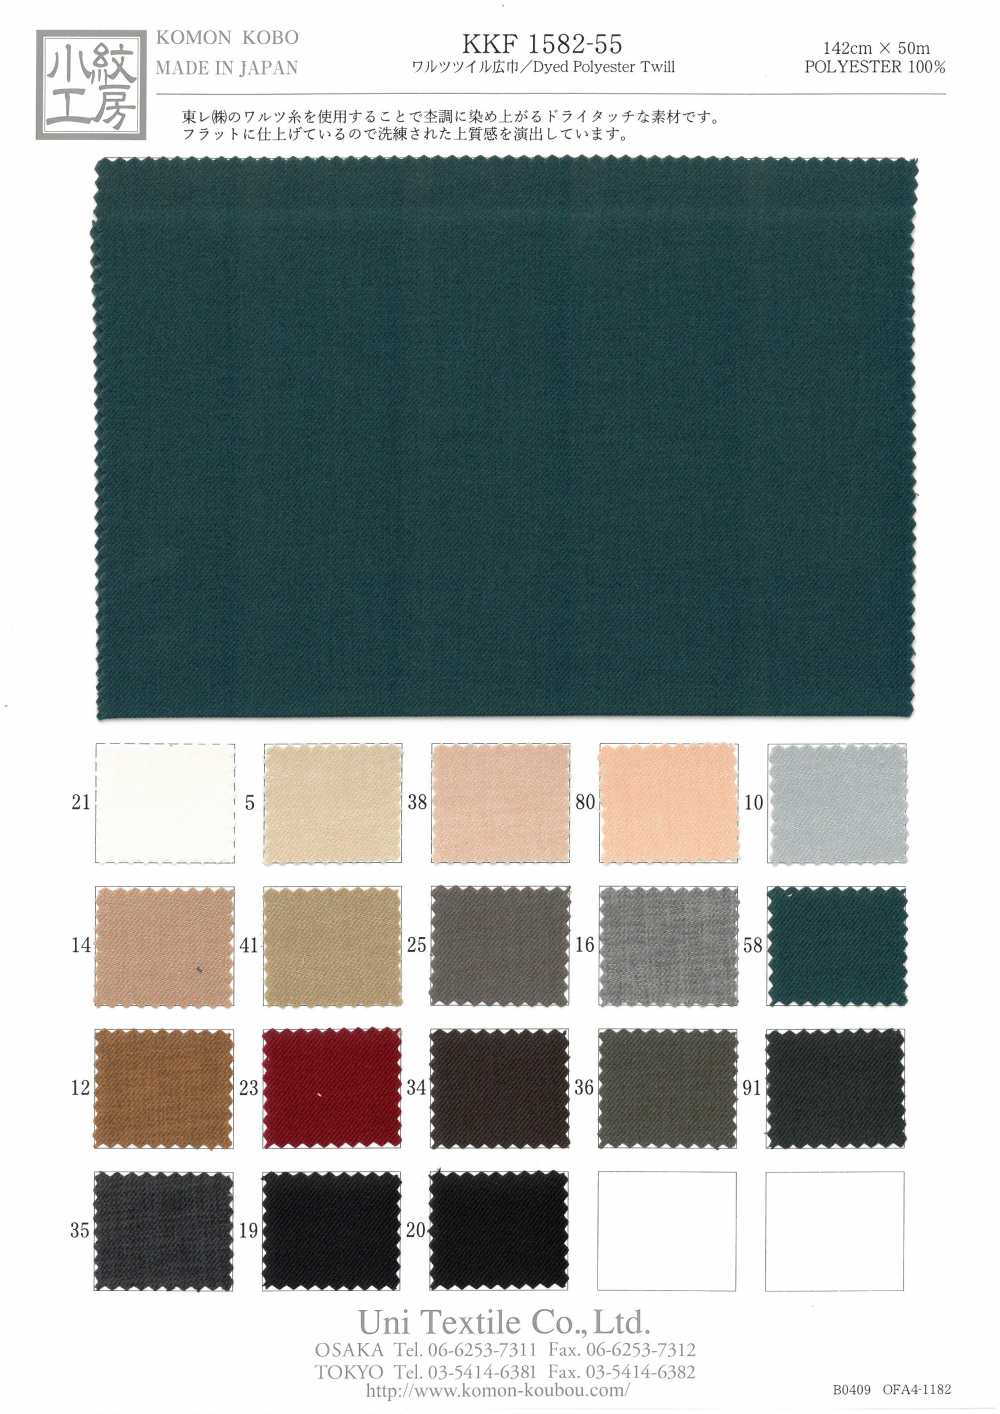 KKF1582-55 Walzer Twill Breite Breite[Textilgewebe] Uni Textile